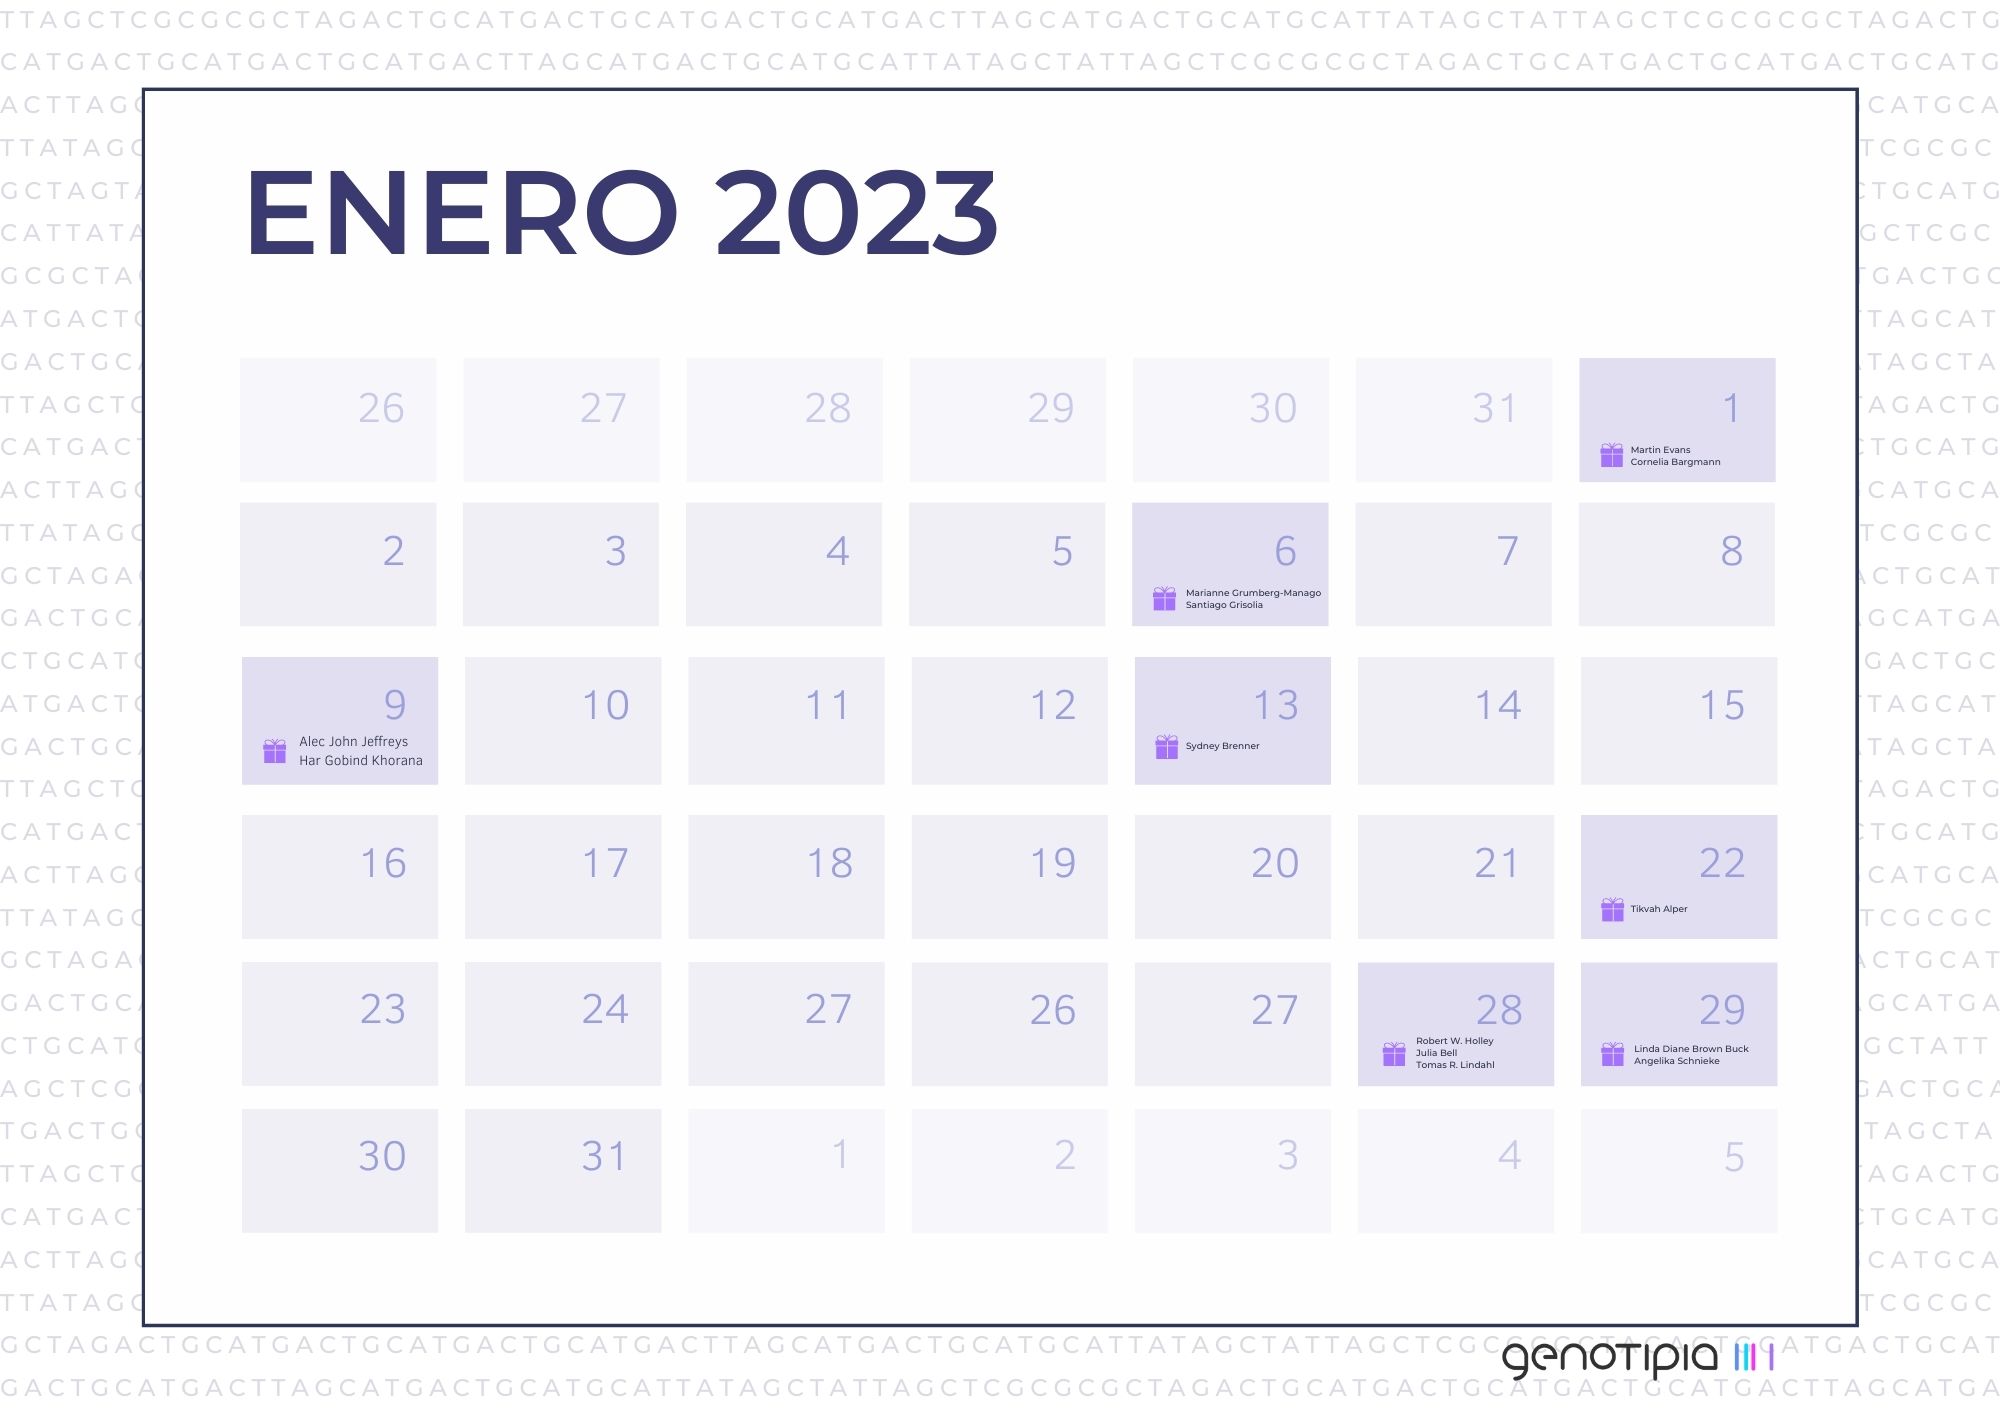 Mes De Enero 2023 Calendario genético: enero 2023 - Genotipia